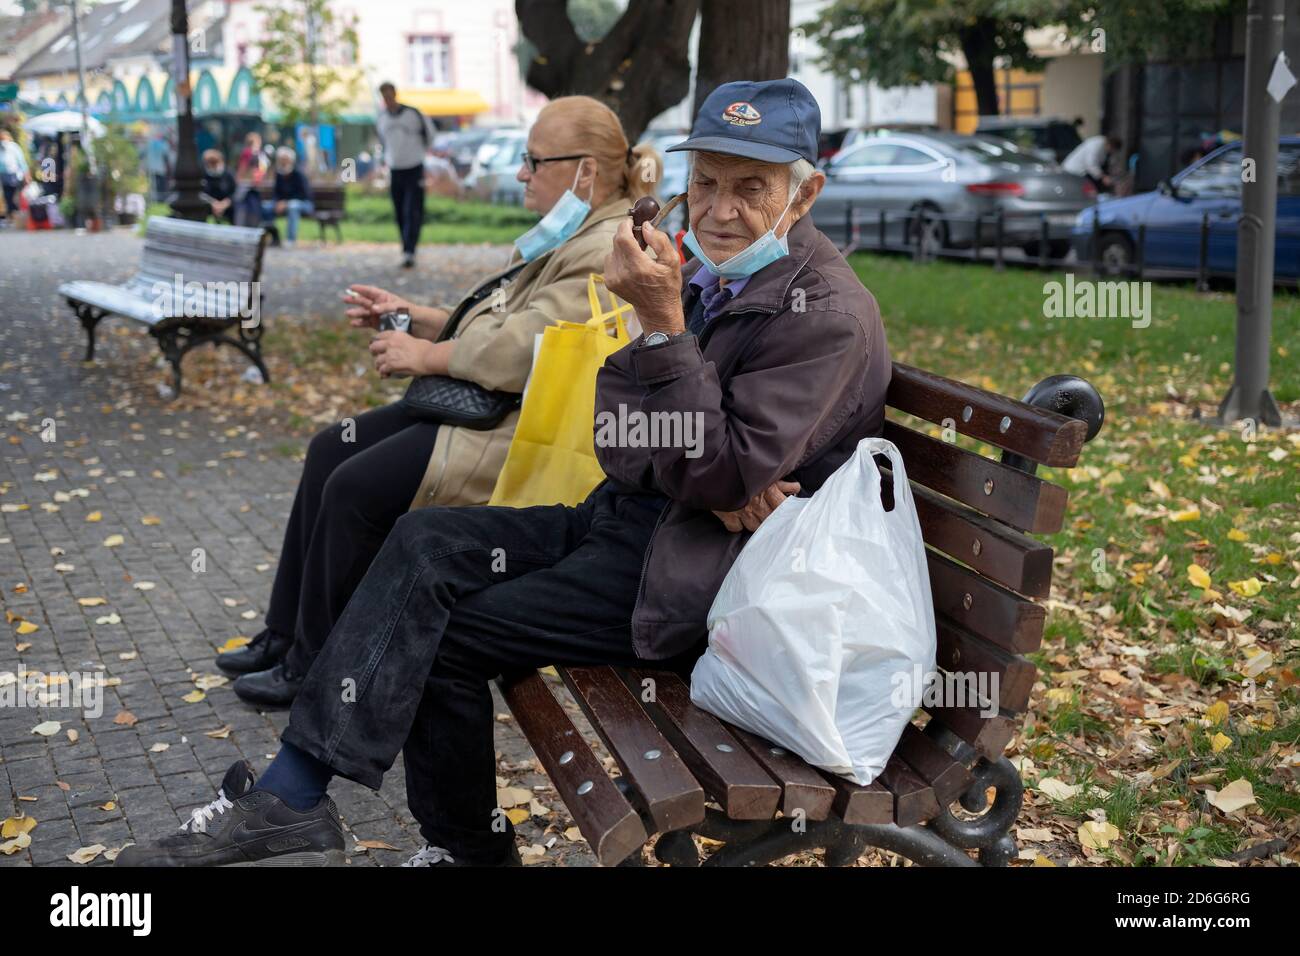 Belgrade, Serbie, 11 octobre 2020 : une femme assise sur un banc fumant une cigarette à côté d'un homme fumant une pipe Banque D'Images